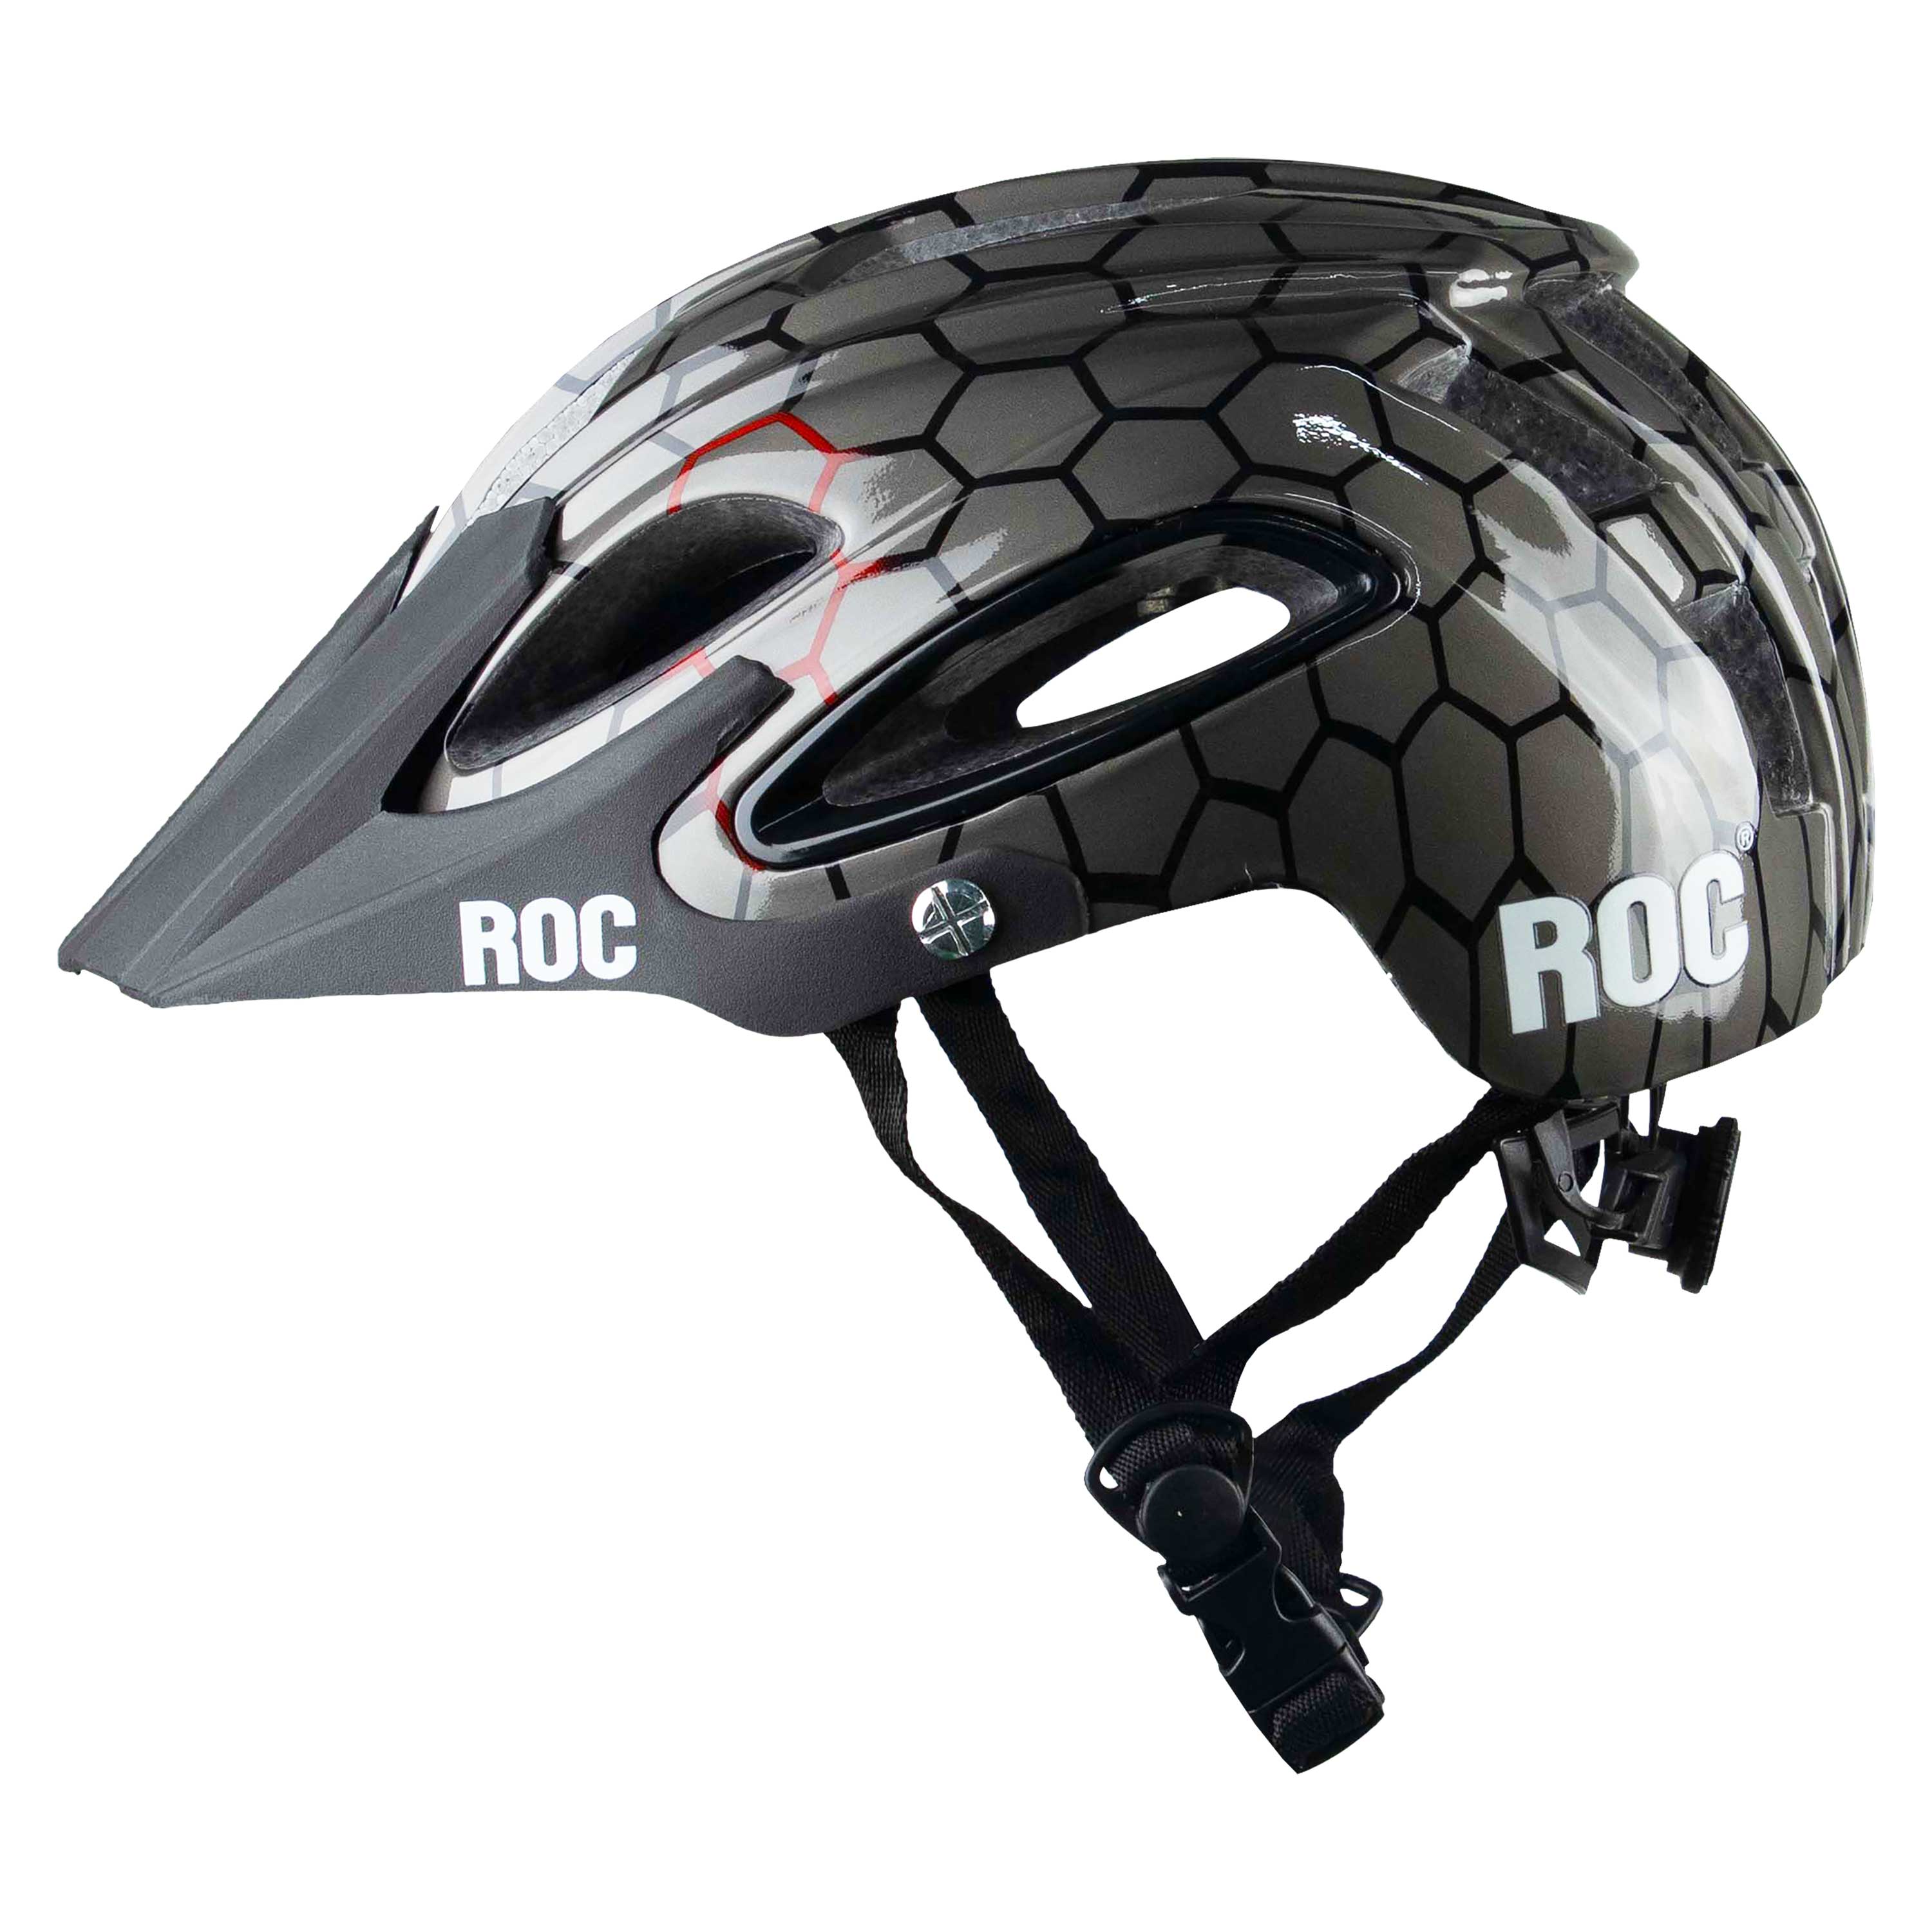 Roc R15 V2